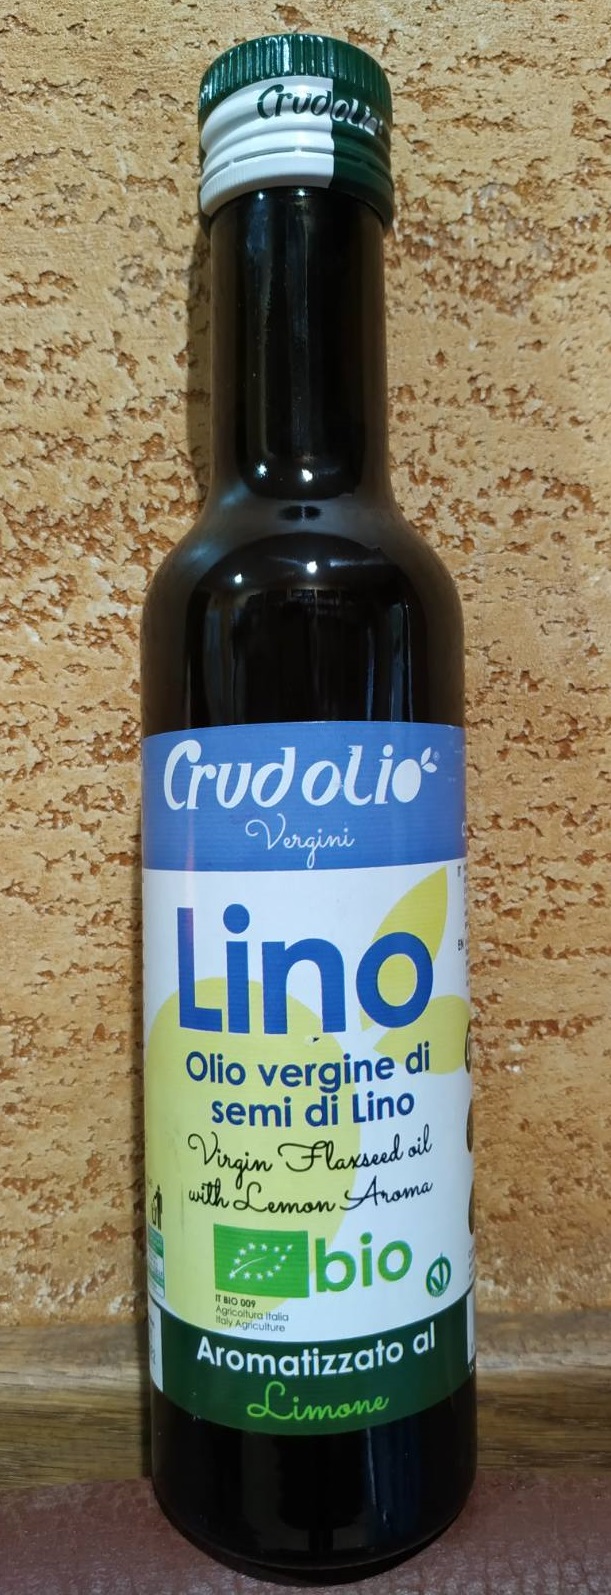 Lino olio vergine di semi di lino Limone Сrudolio Vergini Масло льна с лимоном Льняное масло Италия 250 мл